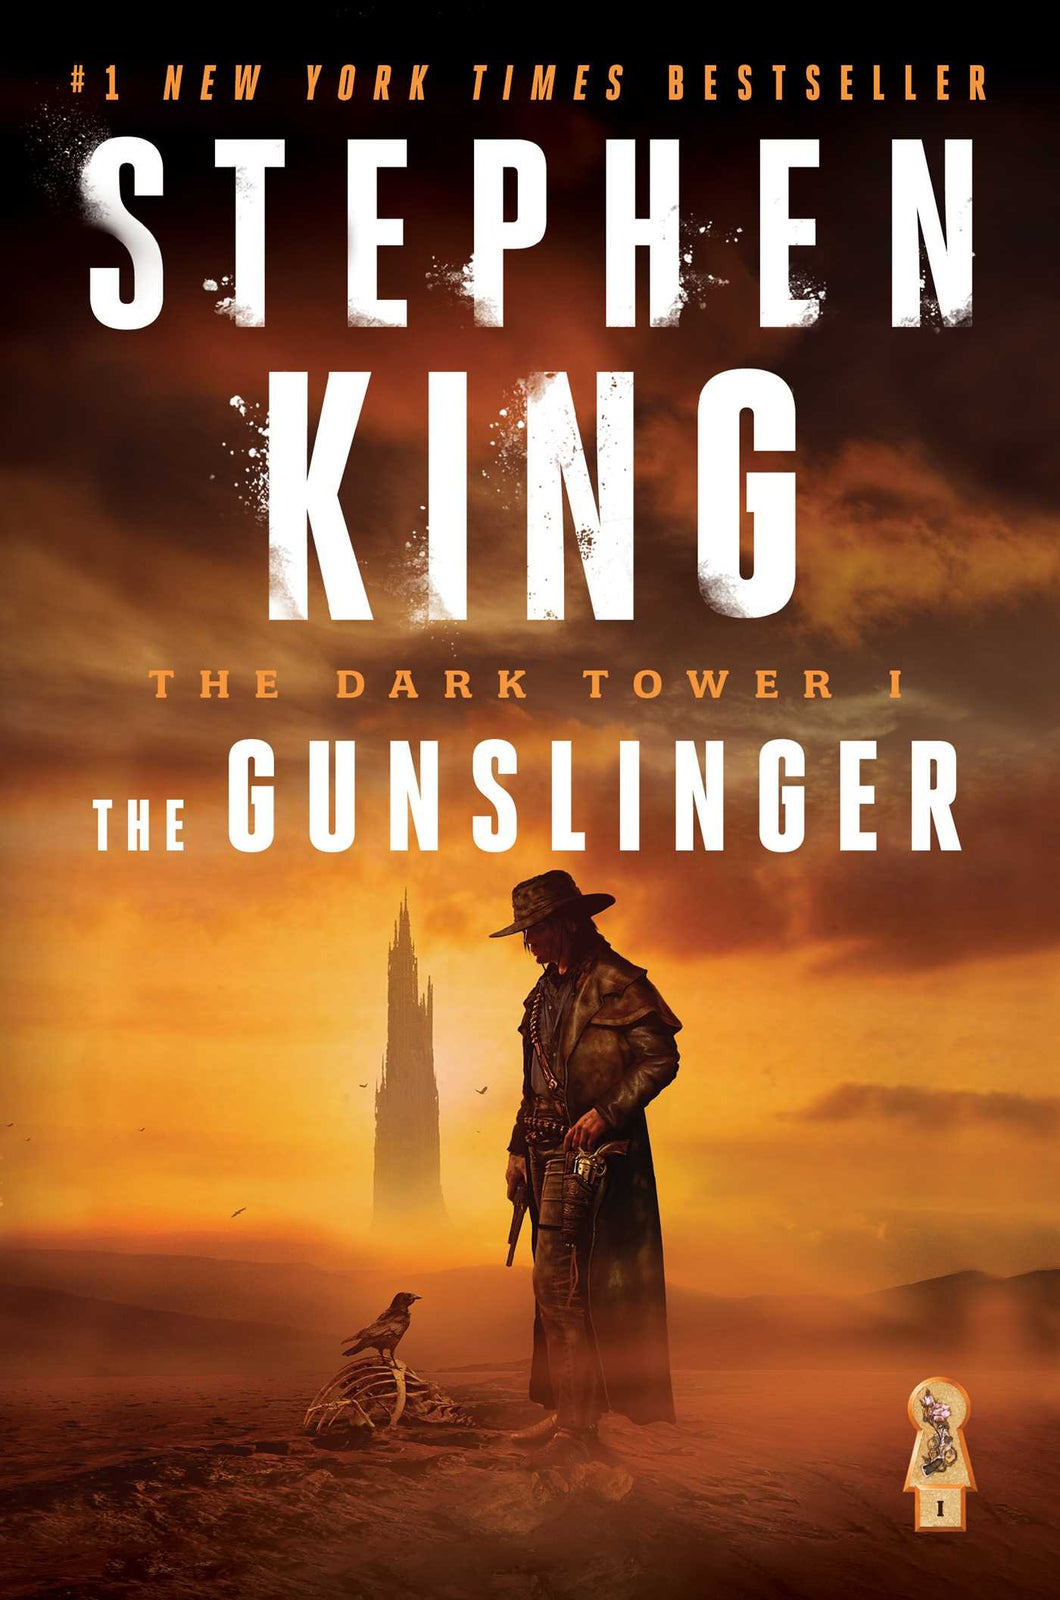 The Dark Tower I: The Gunslinger Volume (Dark Tower #01) - Stephen King